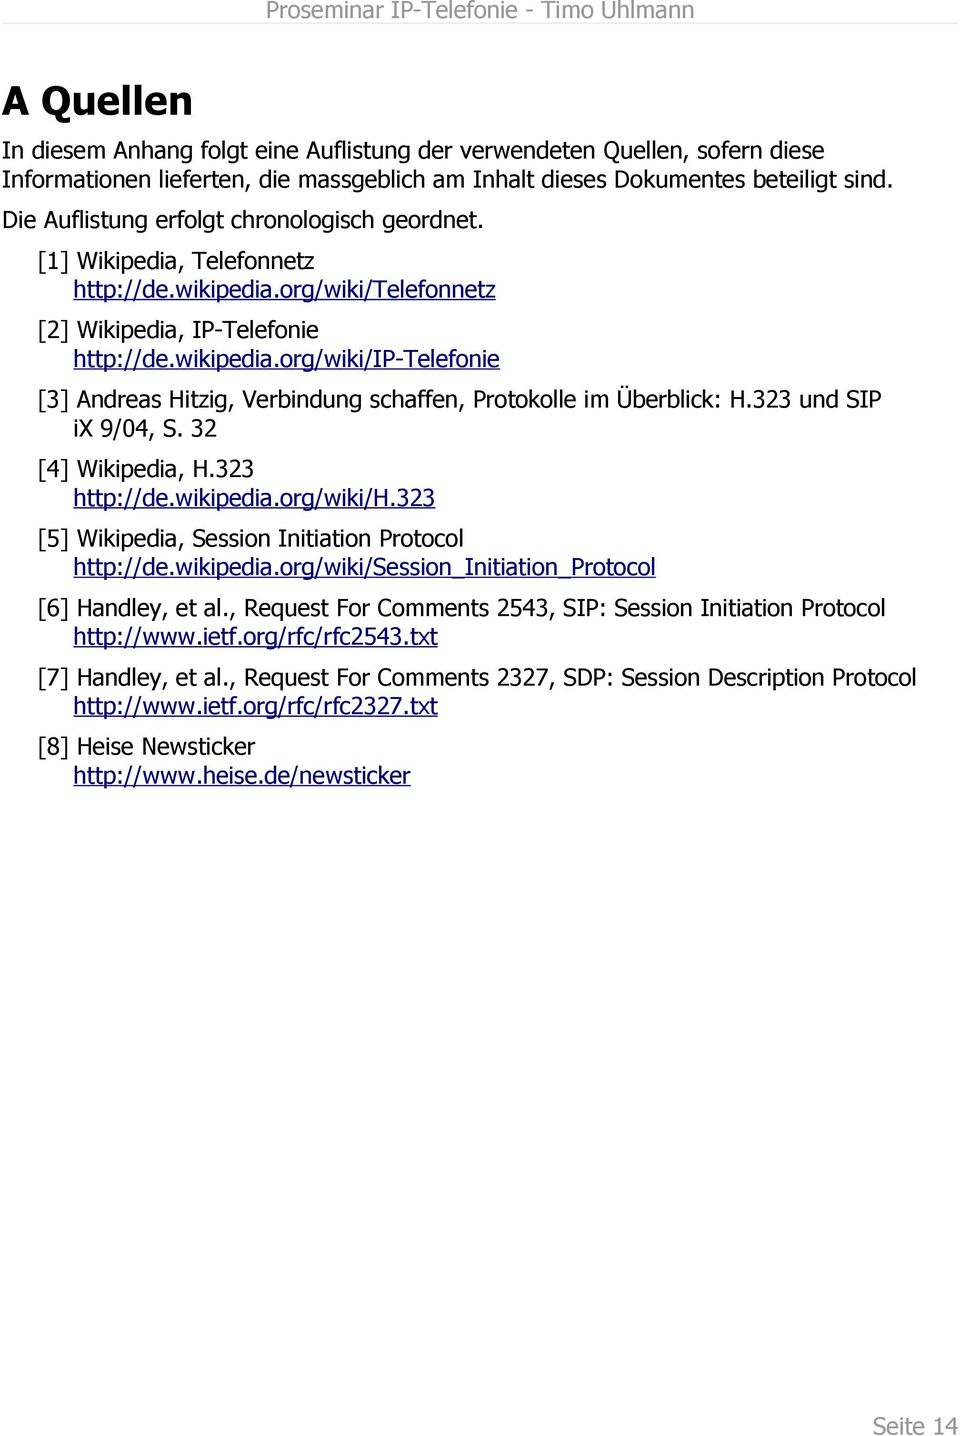 323 und SIP ix 9/04, S. 32 [4] Wikipedia, H.323 http://de.wikipedia.org/wiki/h.323 [5] Wikipedia, Session Initiation Protocol http://de.wikipedia.org/wiki/session_initiation_protocol [6] Handley, et al.